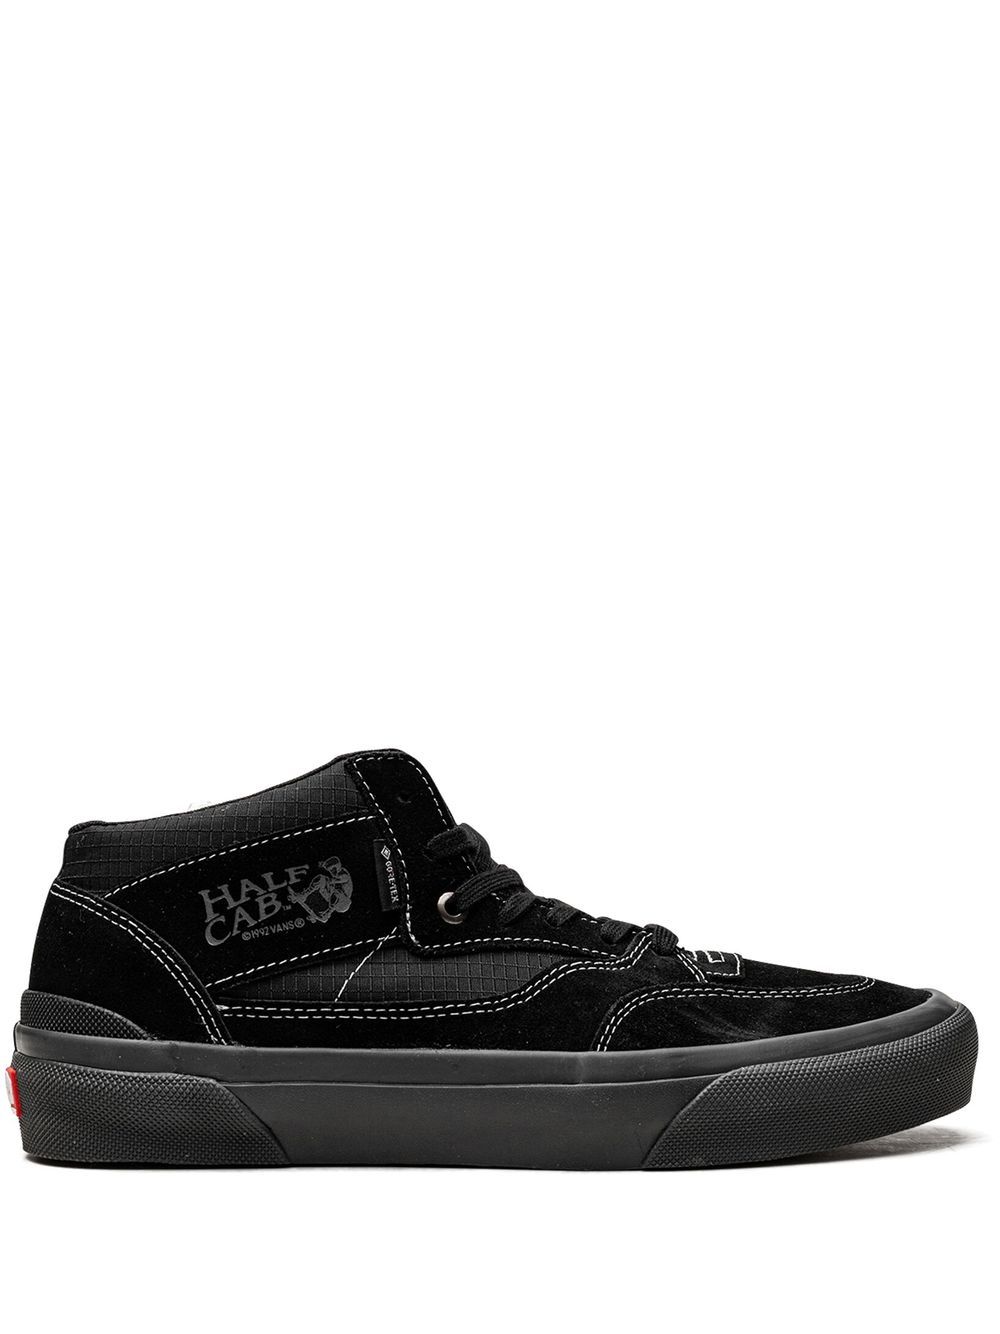 Vans Skate Half Cab '92 GORE-TEX® sneakers - Black von Vans